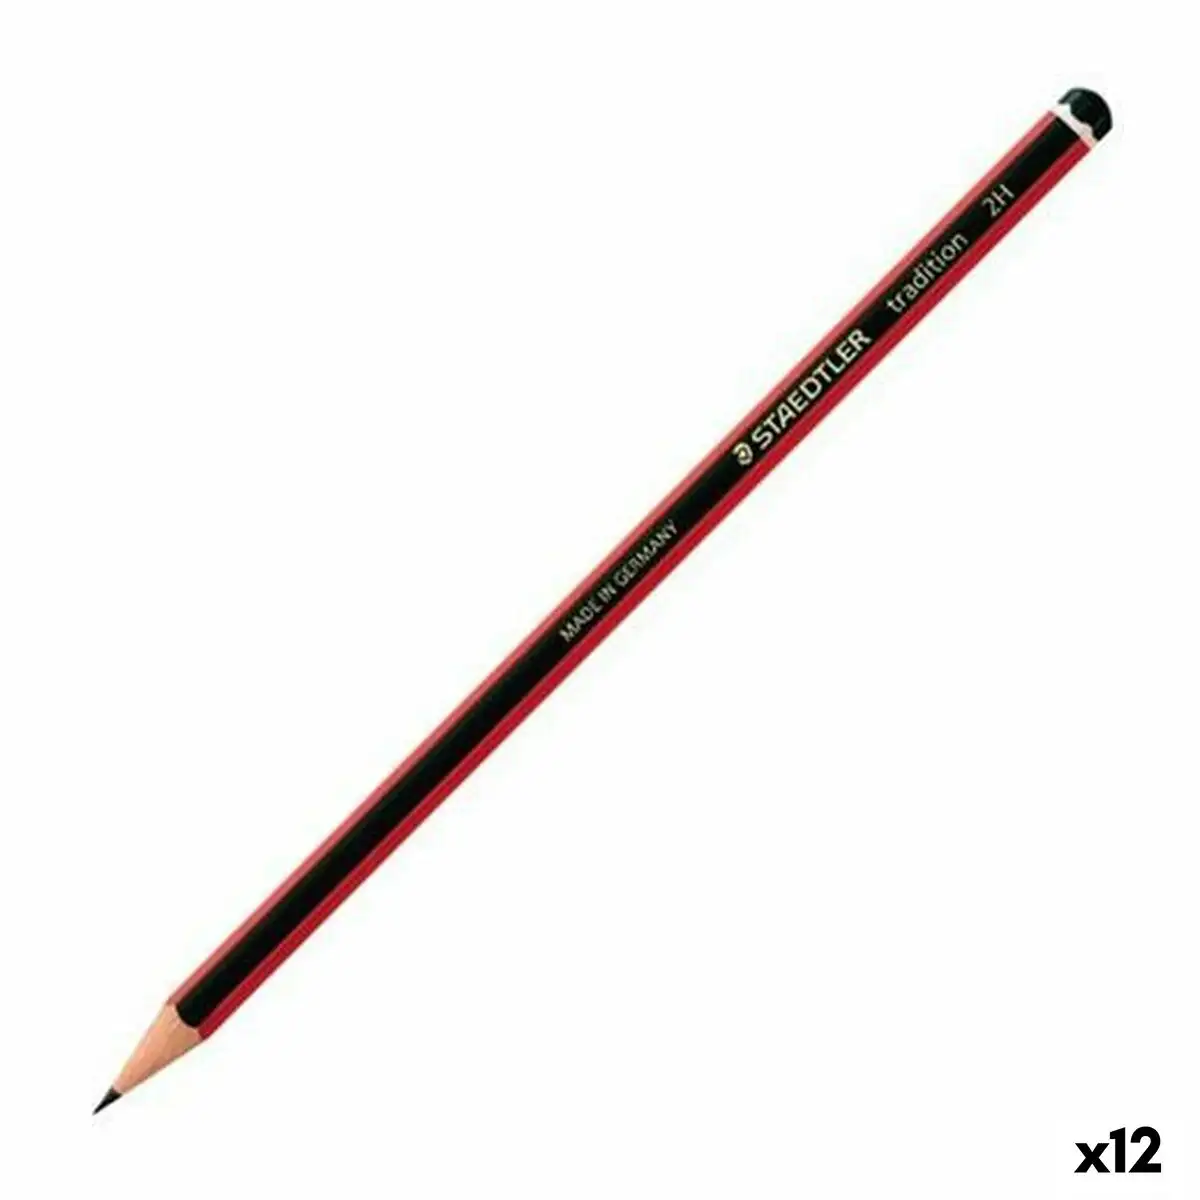 Crayon staedtler tradition hb 12 unites _7482. DIAYTAR SENEGAL - L'Art de Choisir, l'Art de S'émerveiller. Explorez notre gamme de produits et laissez-vous émerveiller par des créations authentiques et des designs modernes.